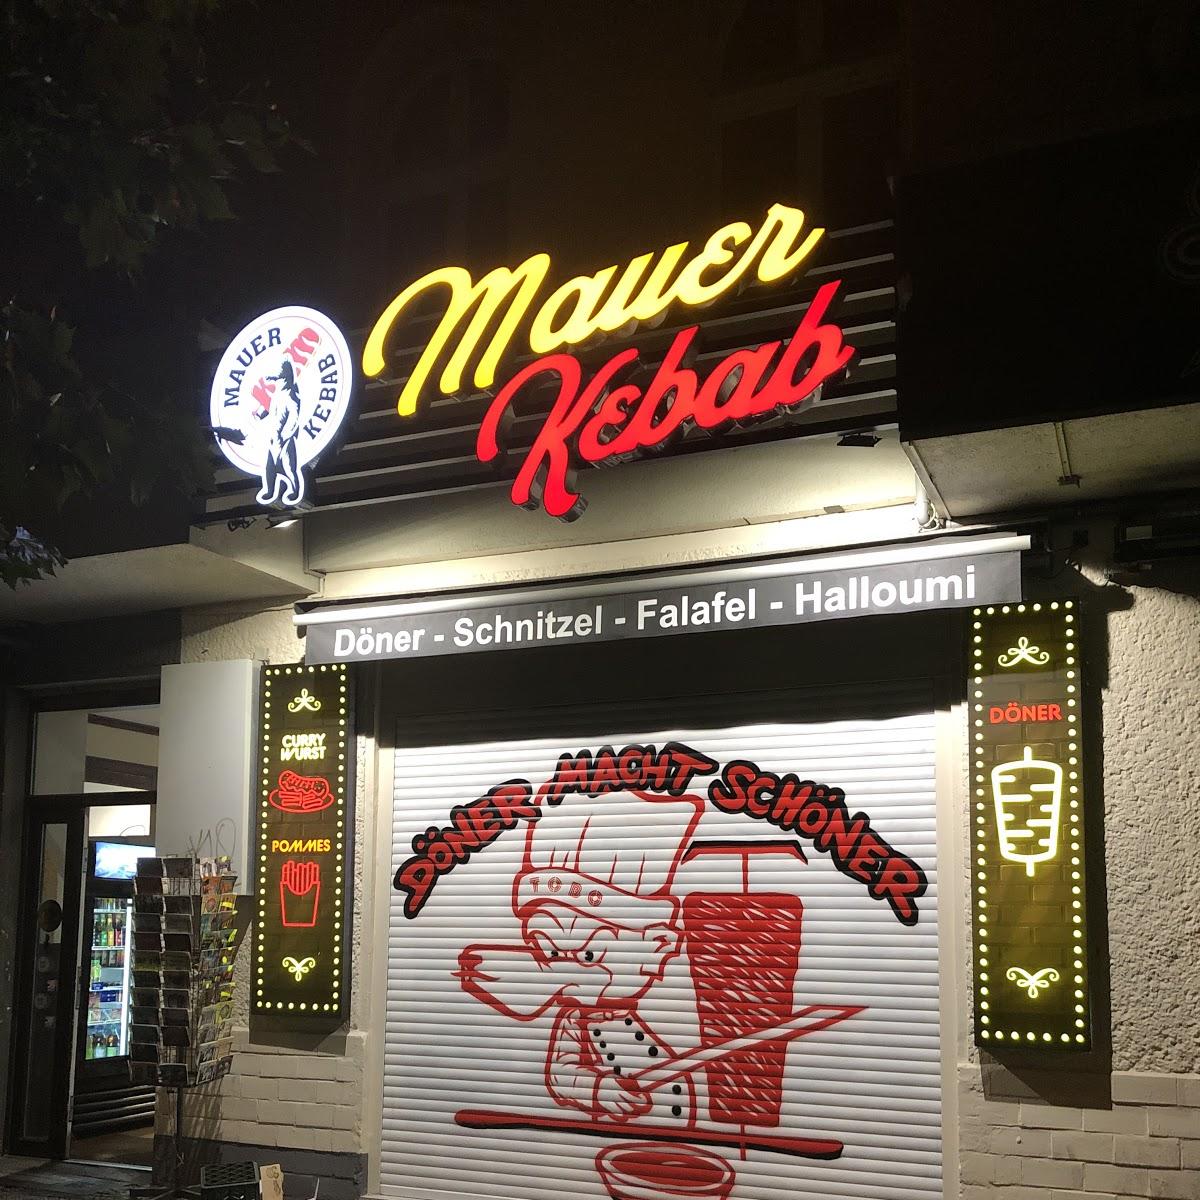 Restaurant "Mauer Kebab" in Berlin